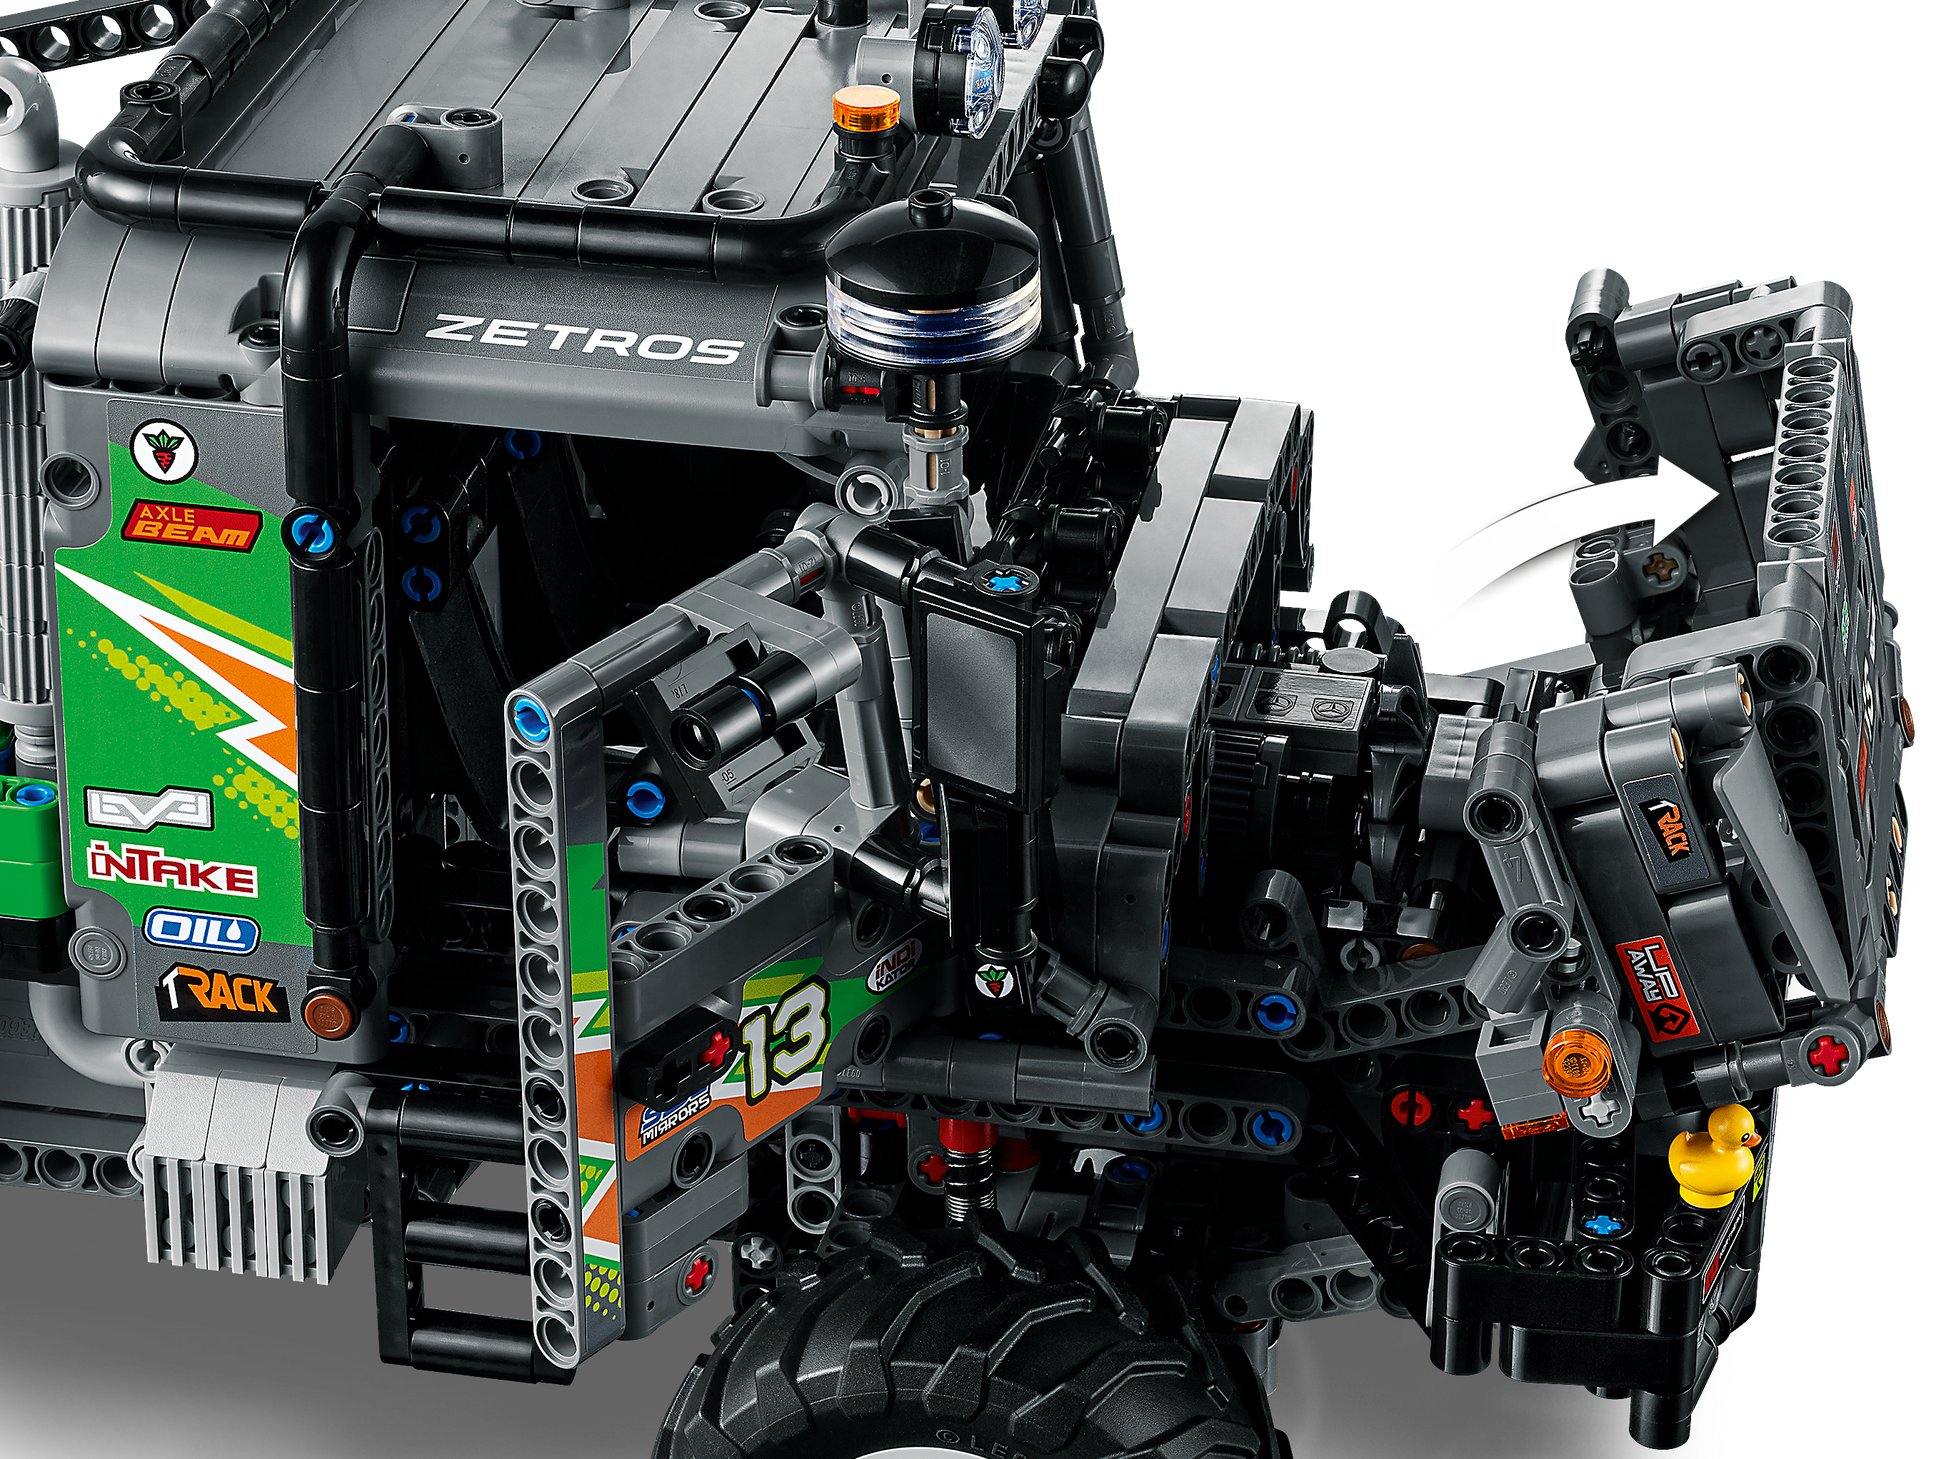 42129 - LEGO® Technic - Le camion d'essai 4x4 Mercedes-Benz Zetros LEGO :  King Jouet, Lego, briques et blocs LEGO - Jeux de construction